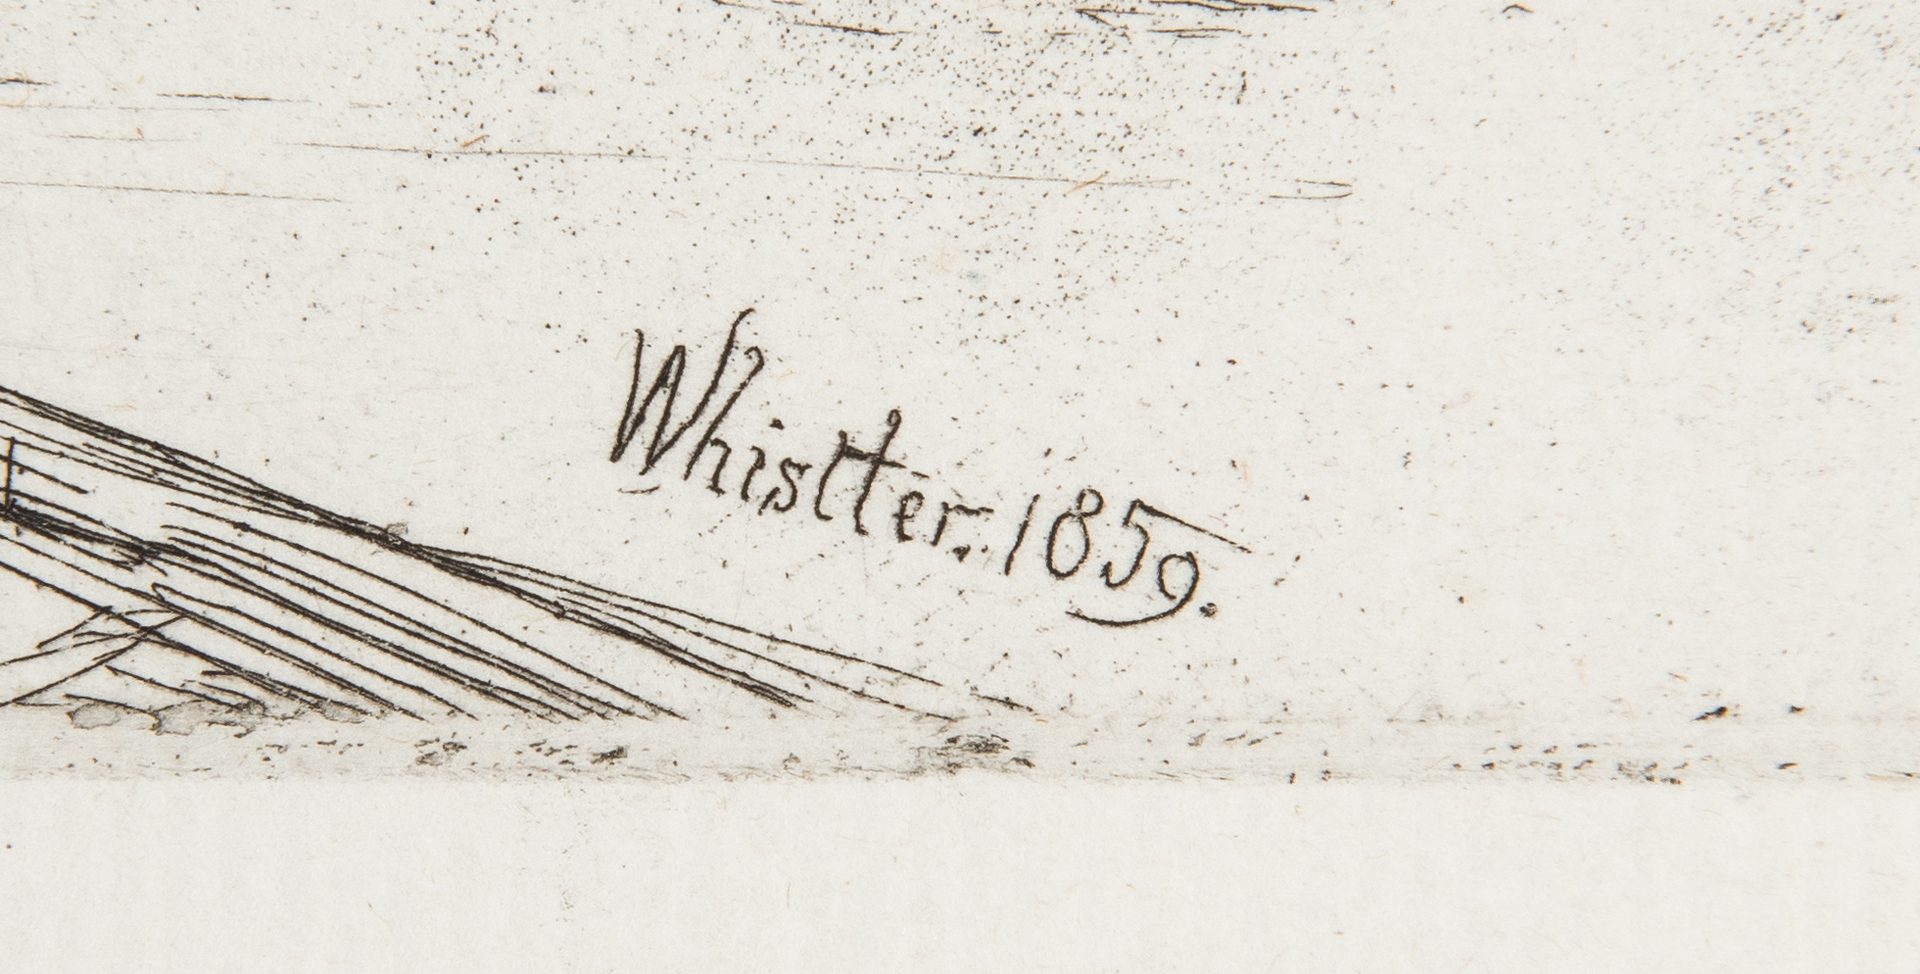 Lot 304: James Whistler Etching, Billingsgate